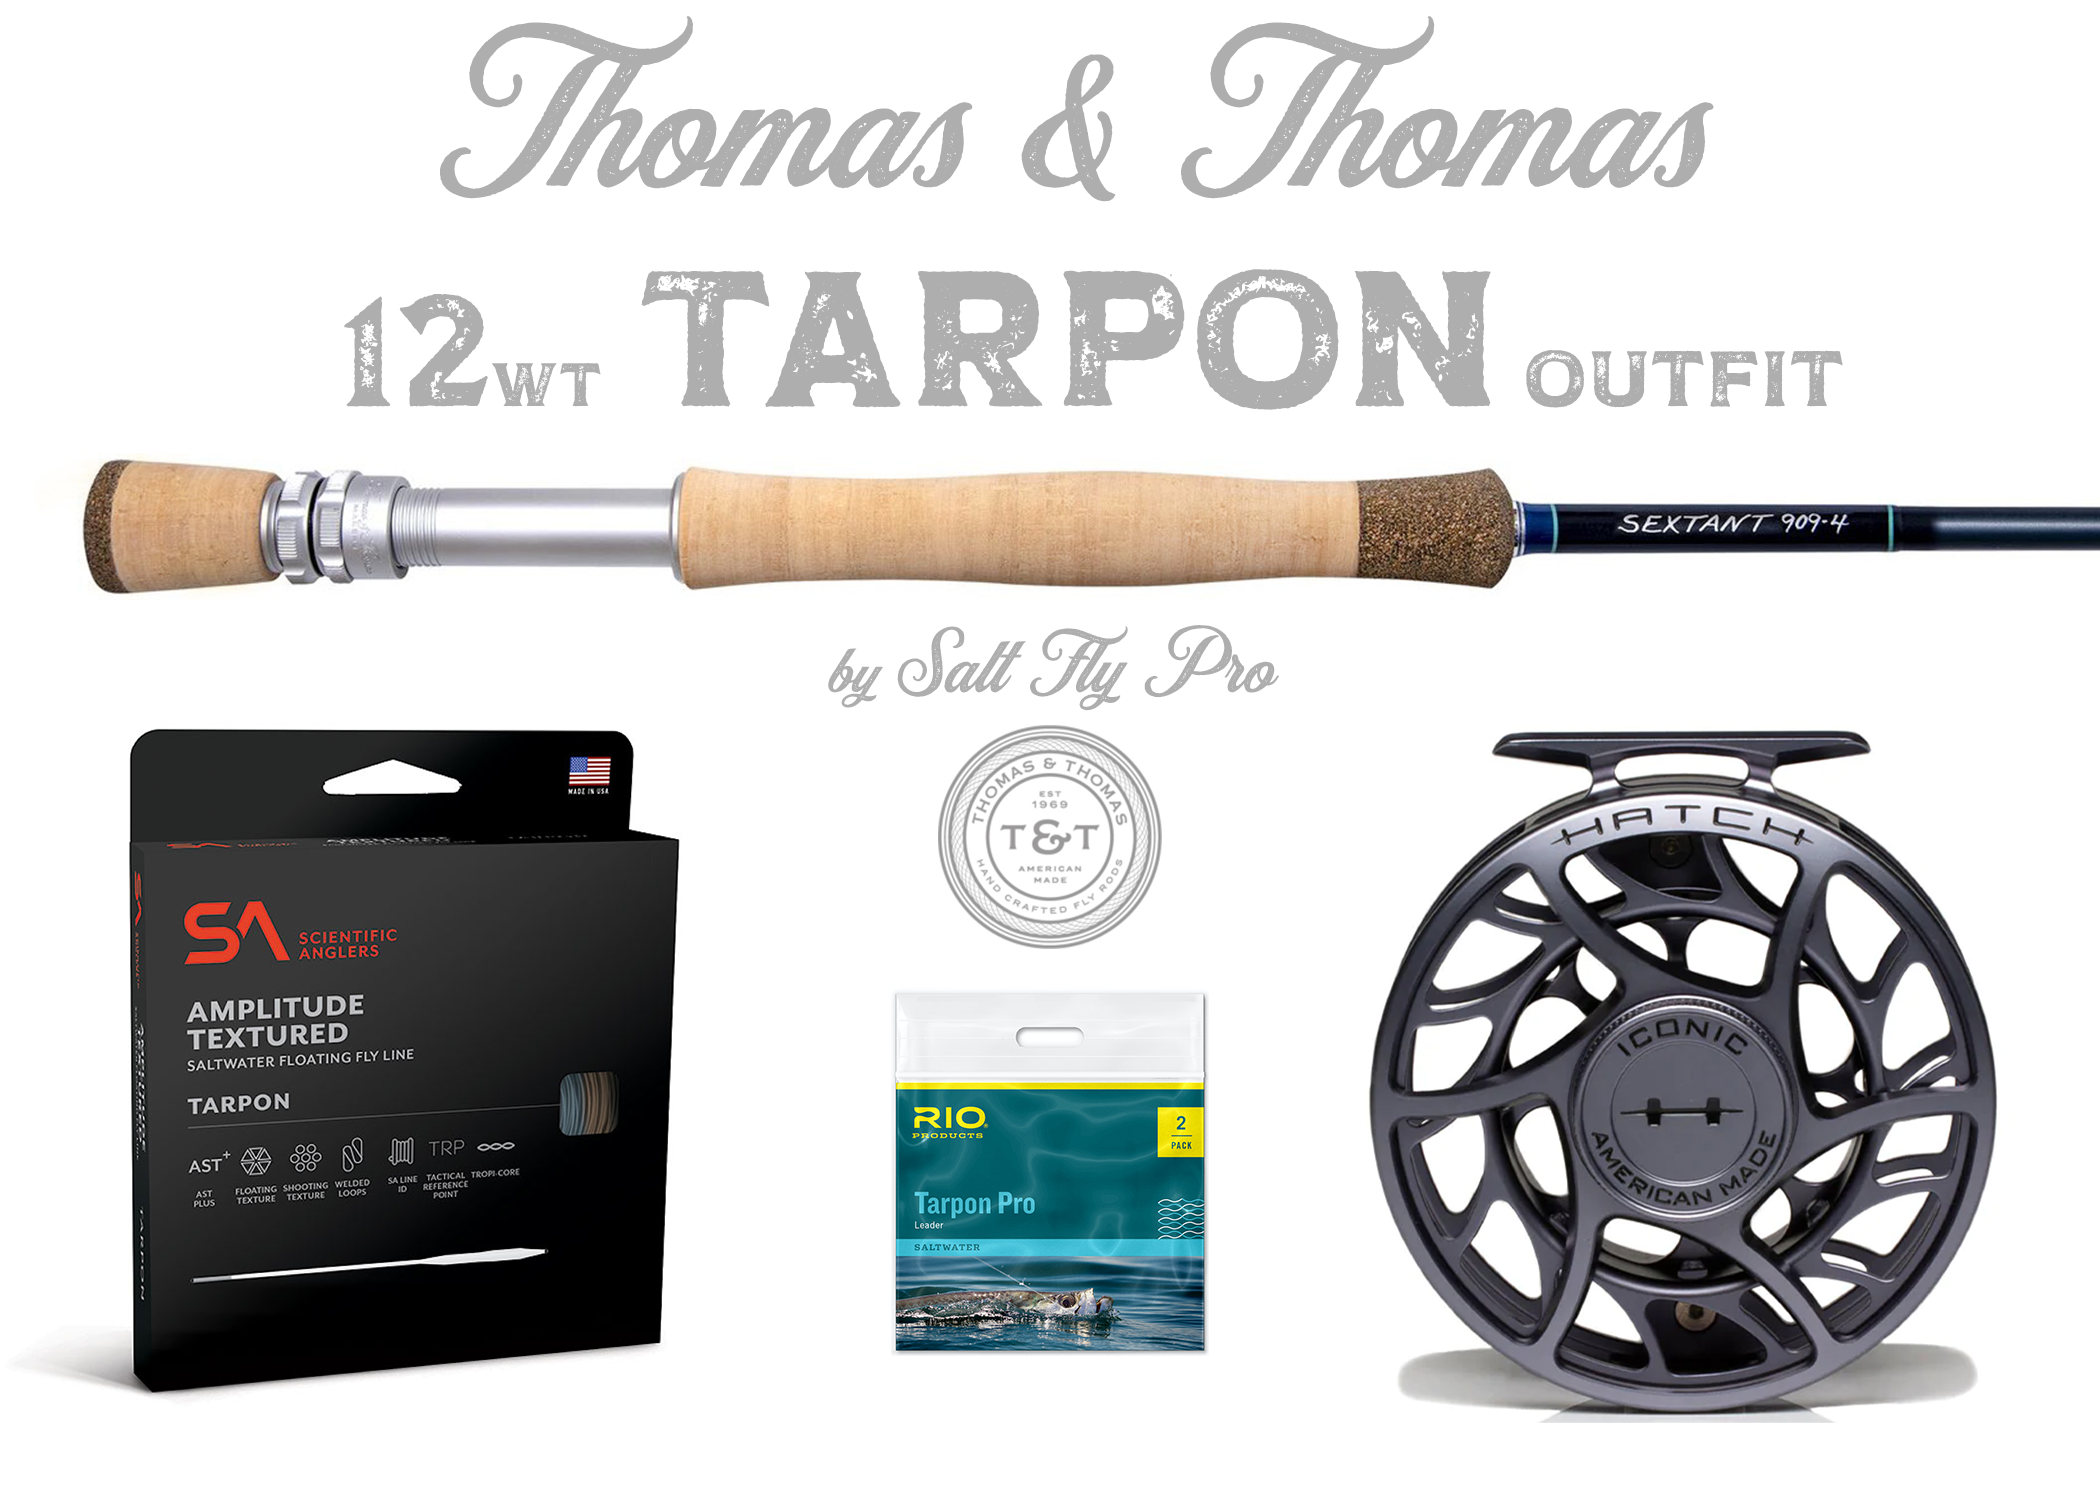 Thomas & Thomas Sextant 12wt TARPON Outfit Combo - NEW!